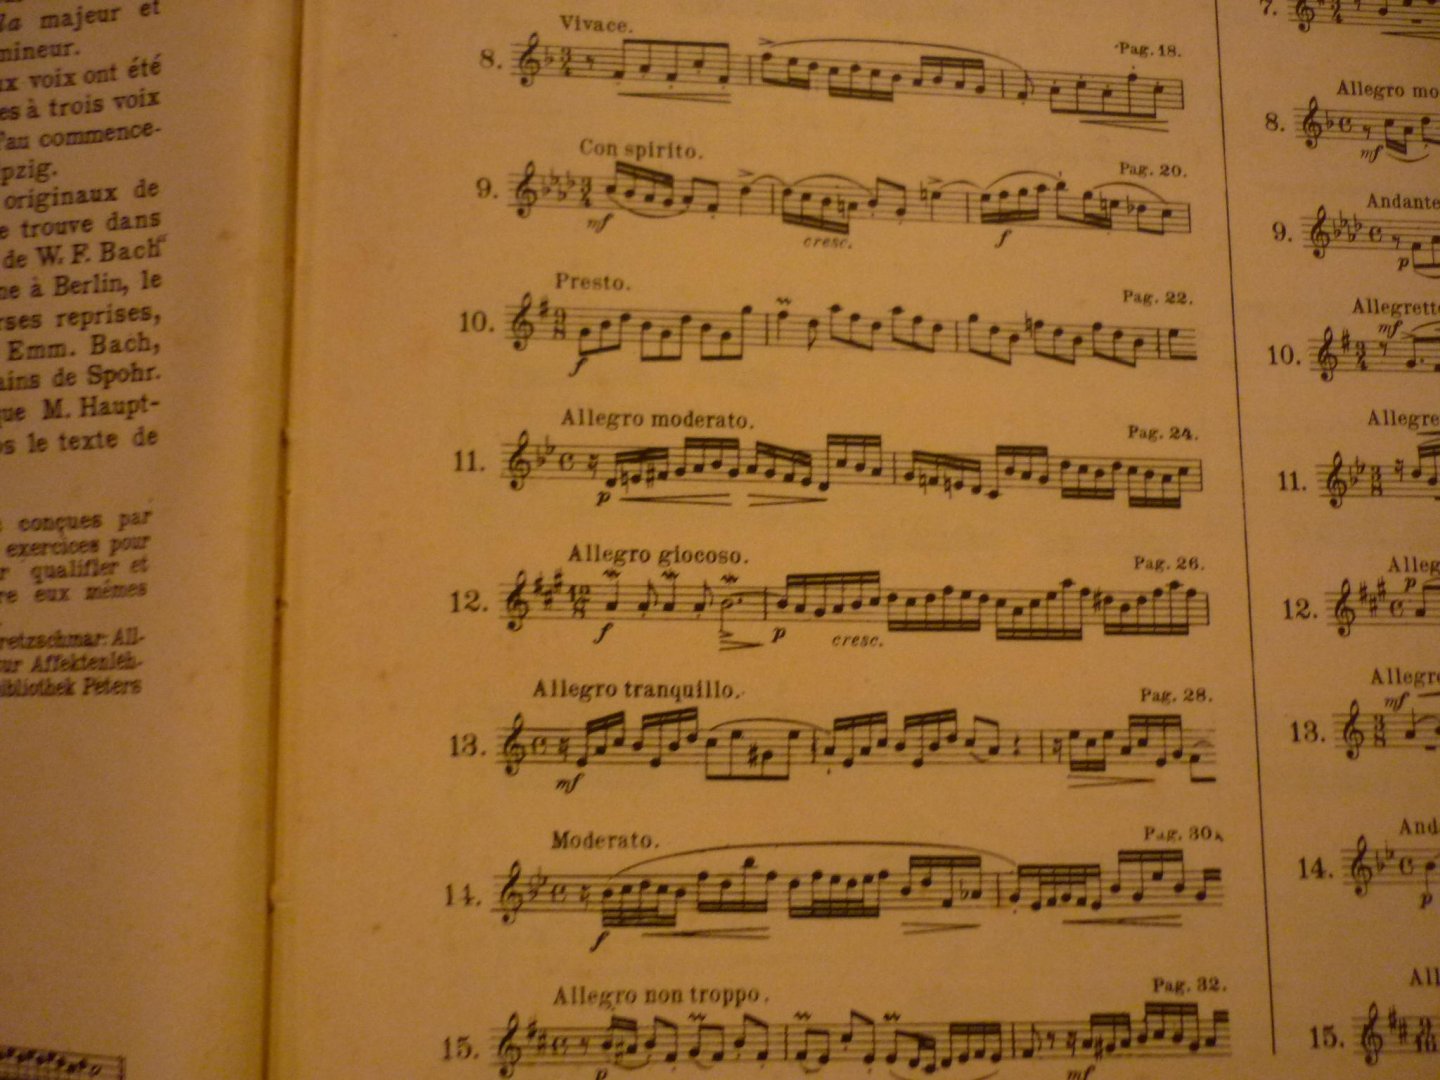 Bach J.S. (1685 – 1750) - Verzamelalbum: Konzert D moll / 3 x: Klavierwerke; herausgegeben von Czerny, Griepenkerl und Roitzsch